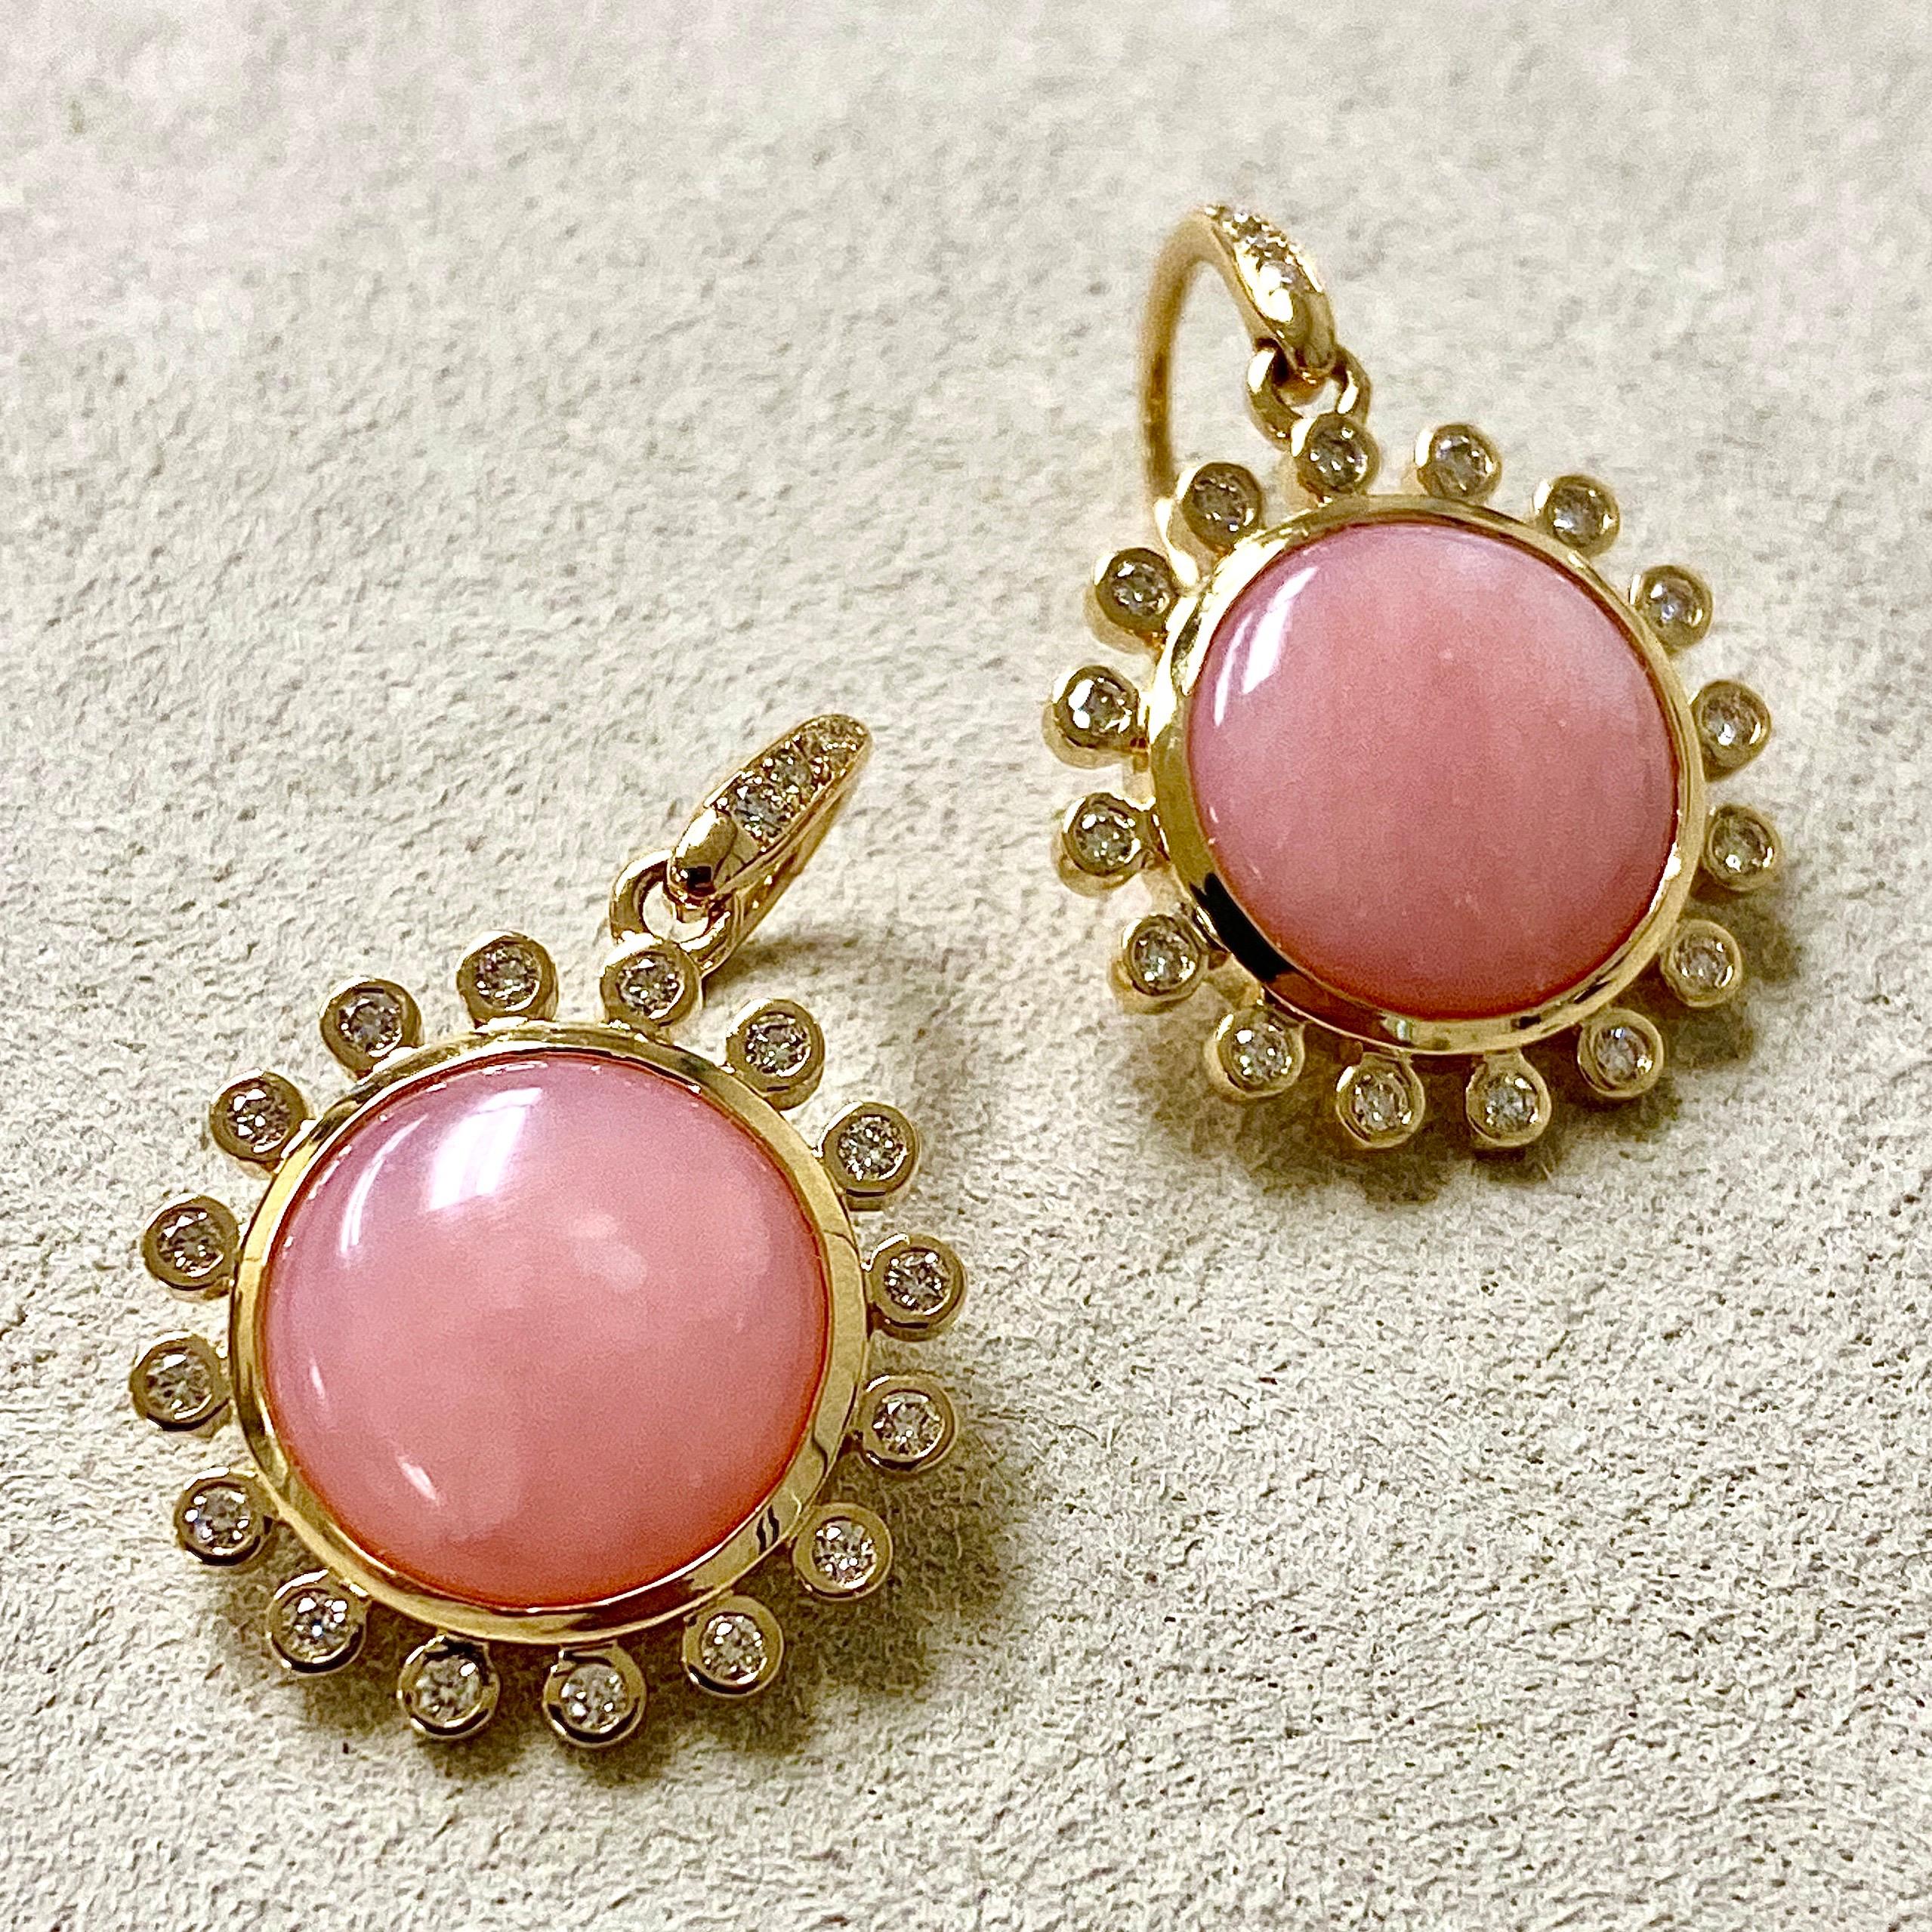 Créé en 18kyg
Opales roses 6 cts environ
Diamants 0,40 ct environ
Unique en son genre

Conçues pour évoquer à la fois la sophistication intemporelle et l'éclat moderne, ces boucles d'oreilles uniques sont composées de 6 carats d'opales roses et de